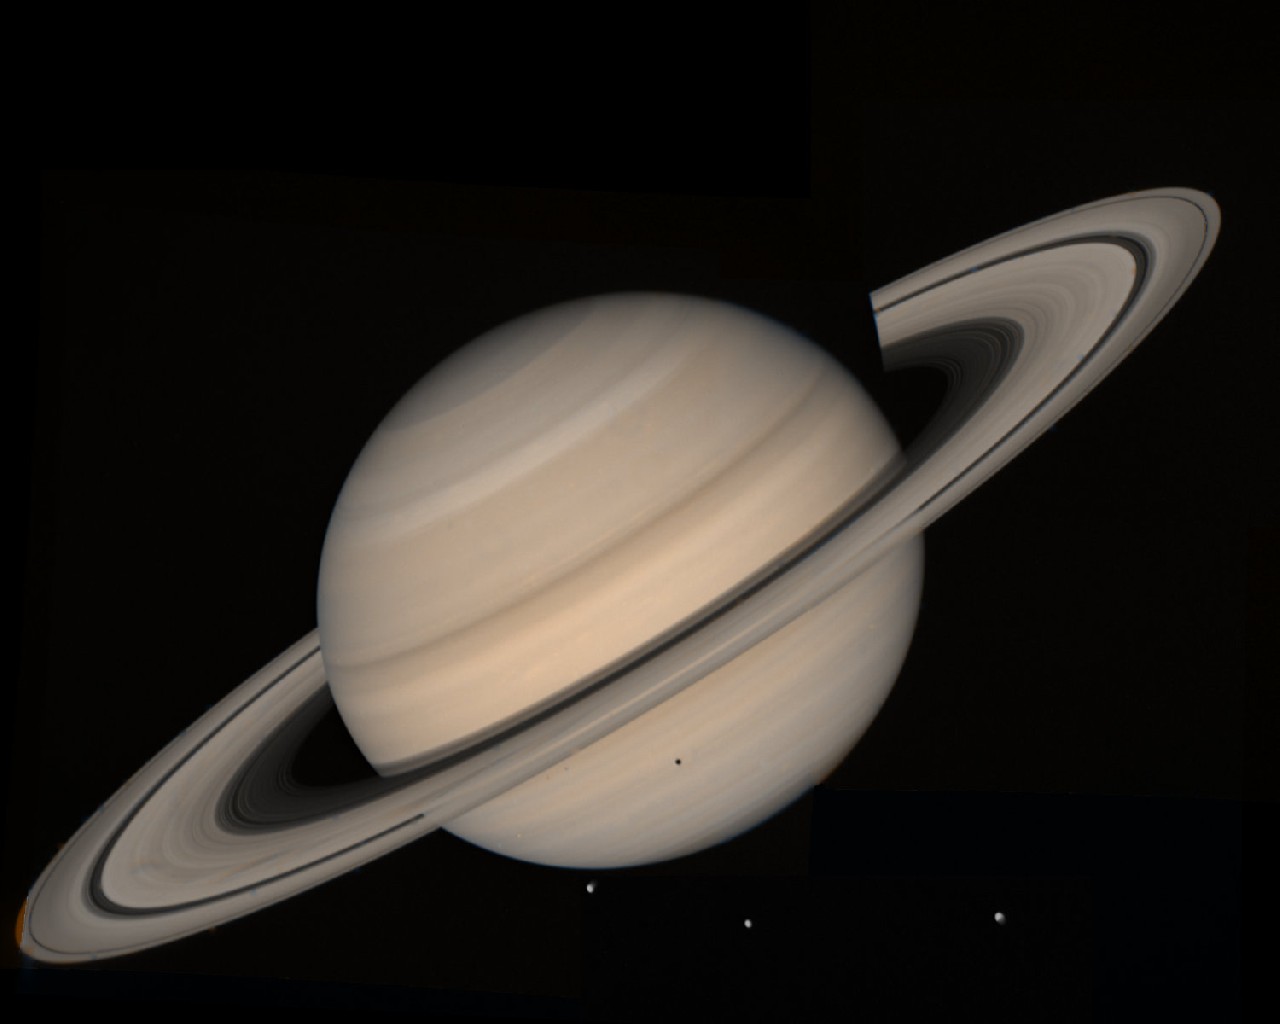 Saturn 1280x1024. Wallpaper, pozad, tapeta na plochu PC